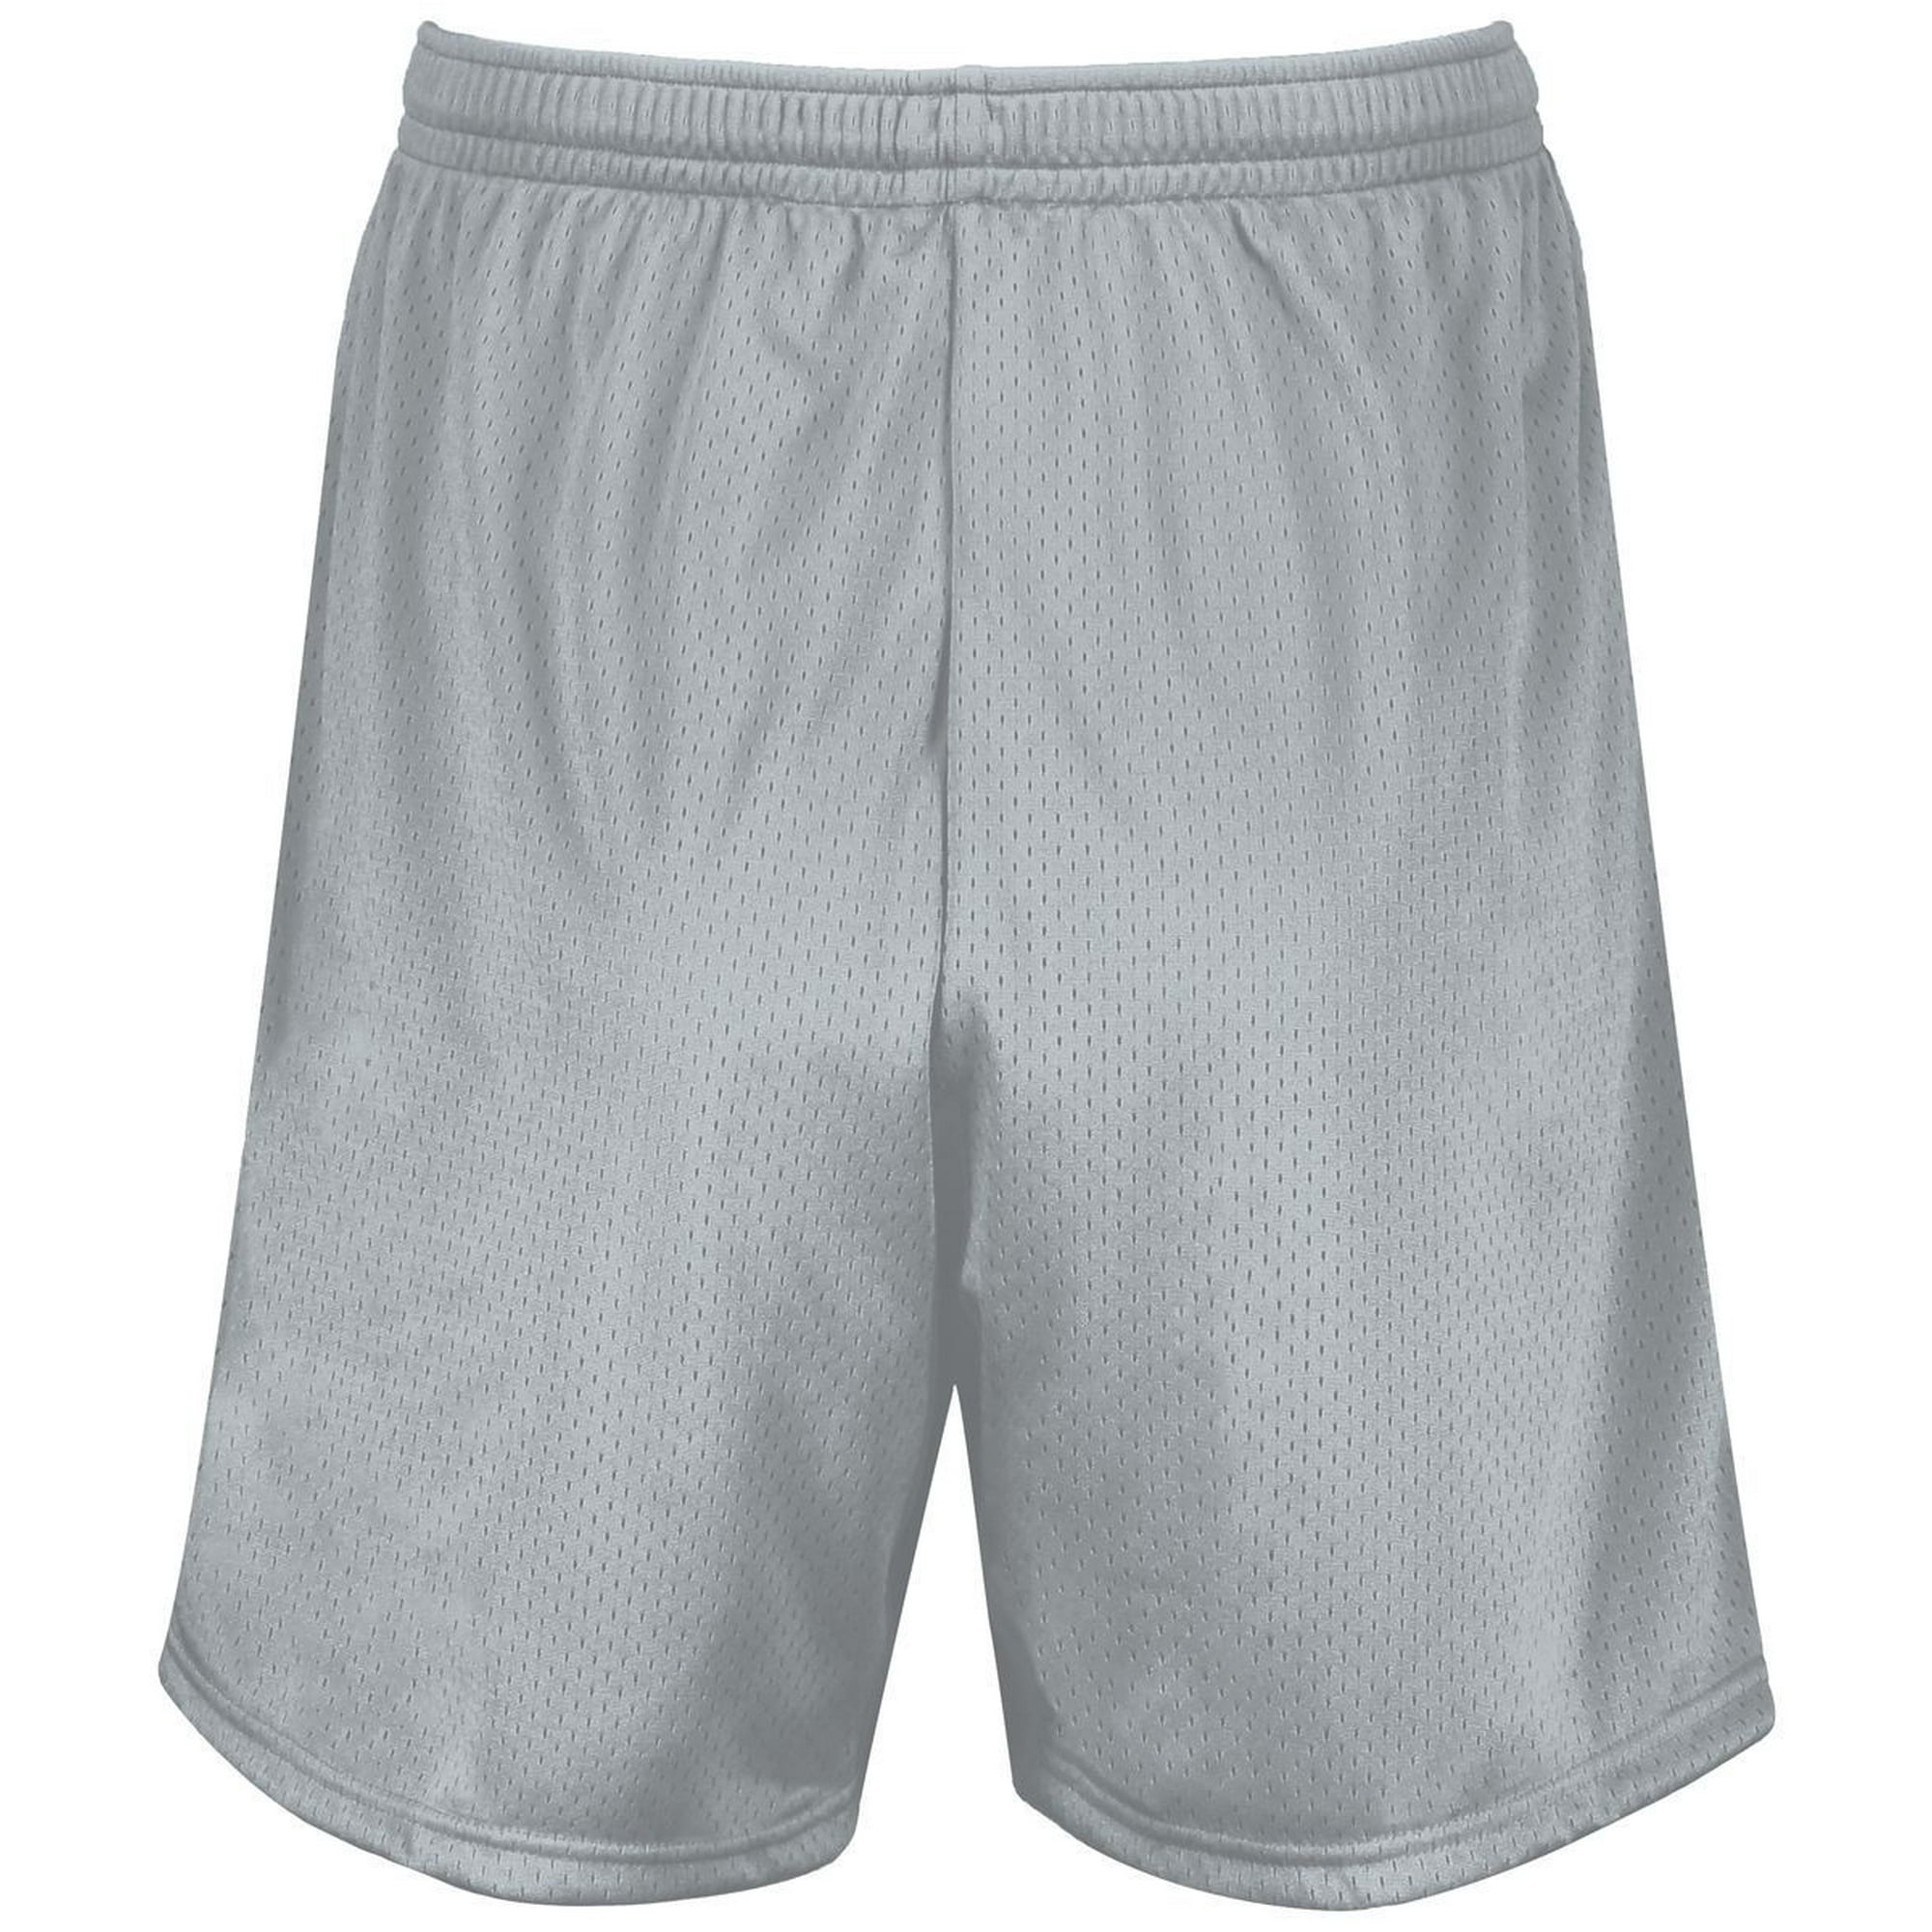 mesh shorts blank